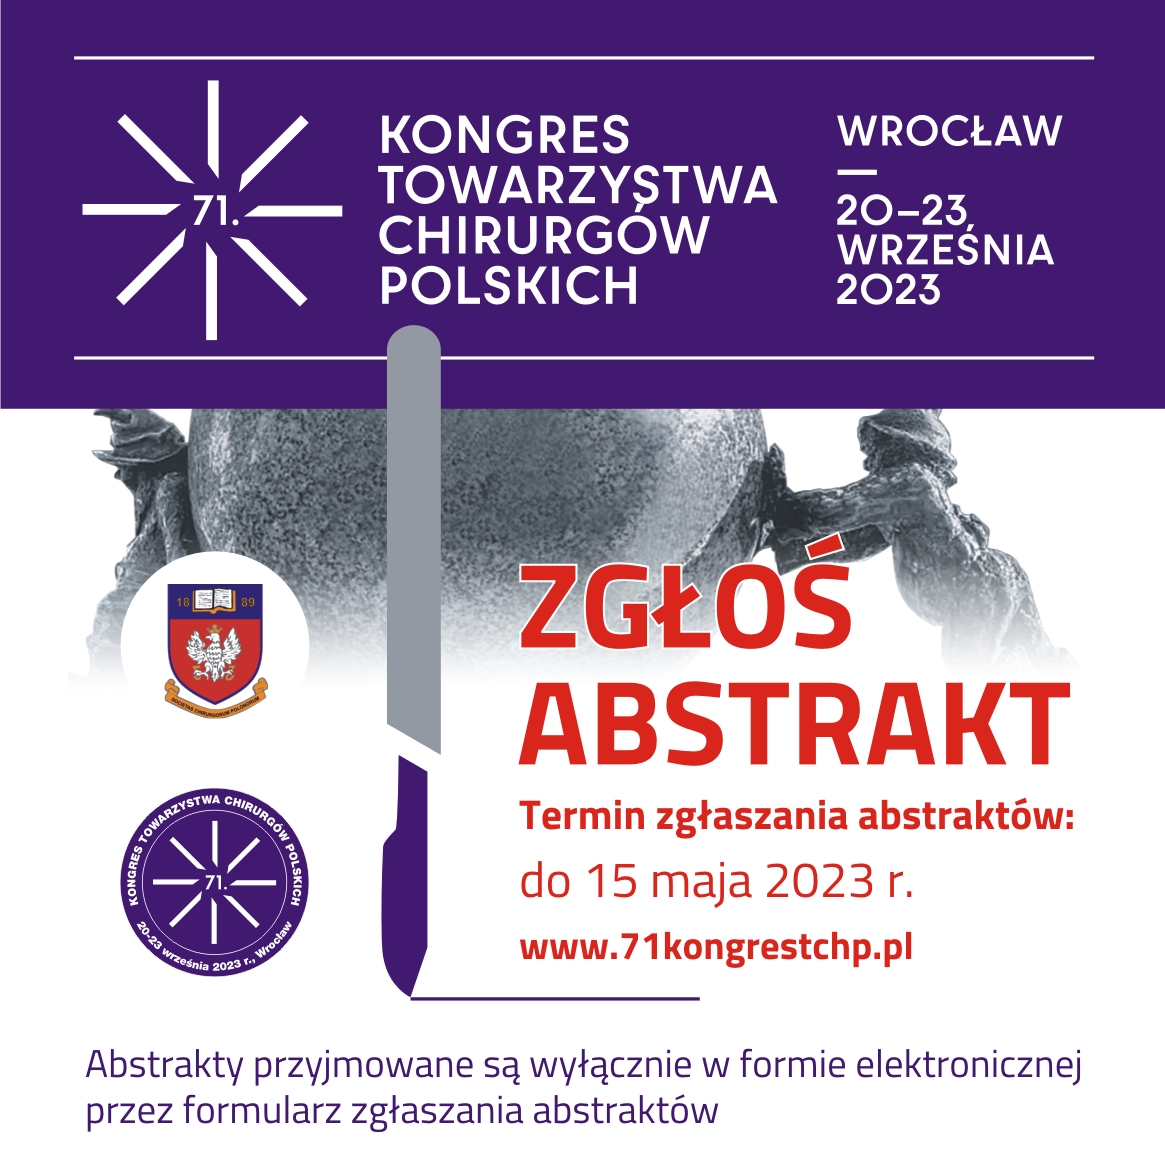 Kongres Towarzystwa Chirurgow Polskich 2023 FB 2